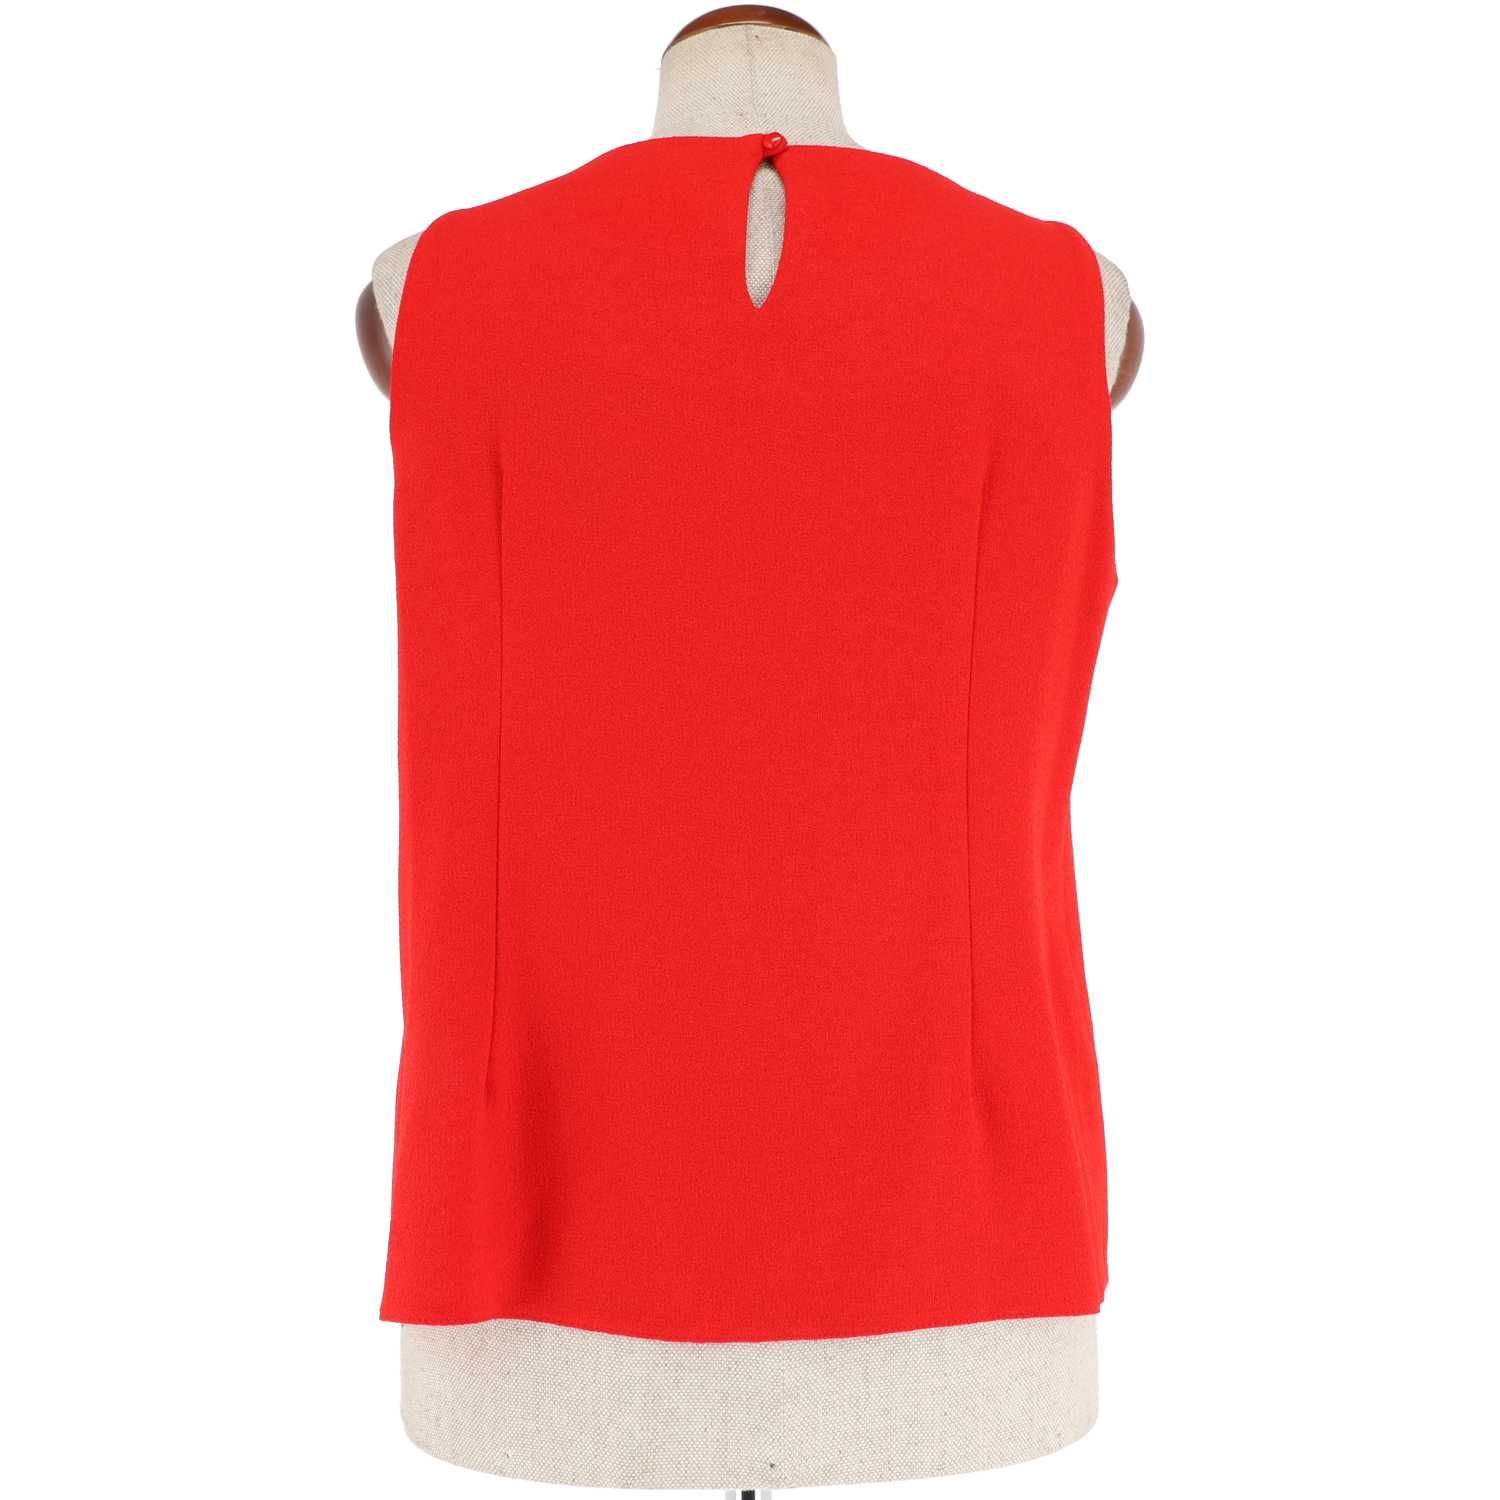 Czerwona bluzka marki Dorothy Perkins, rozmiar 44